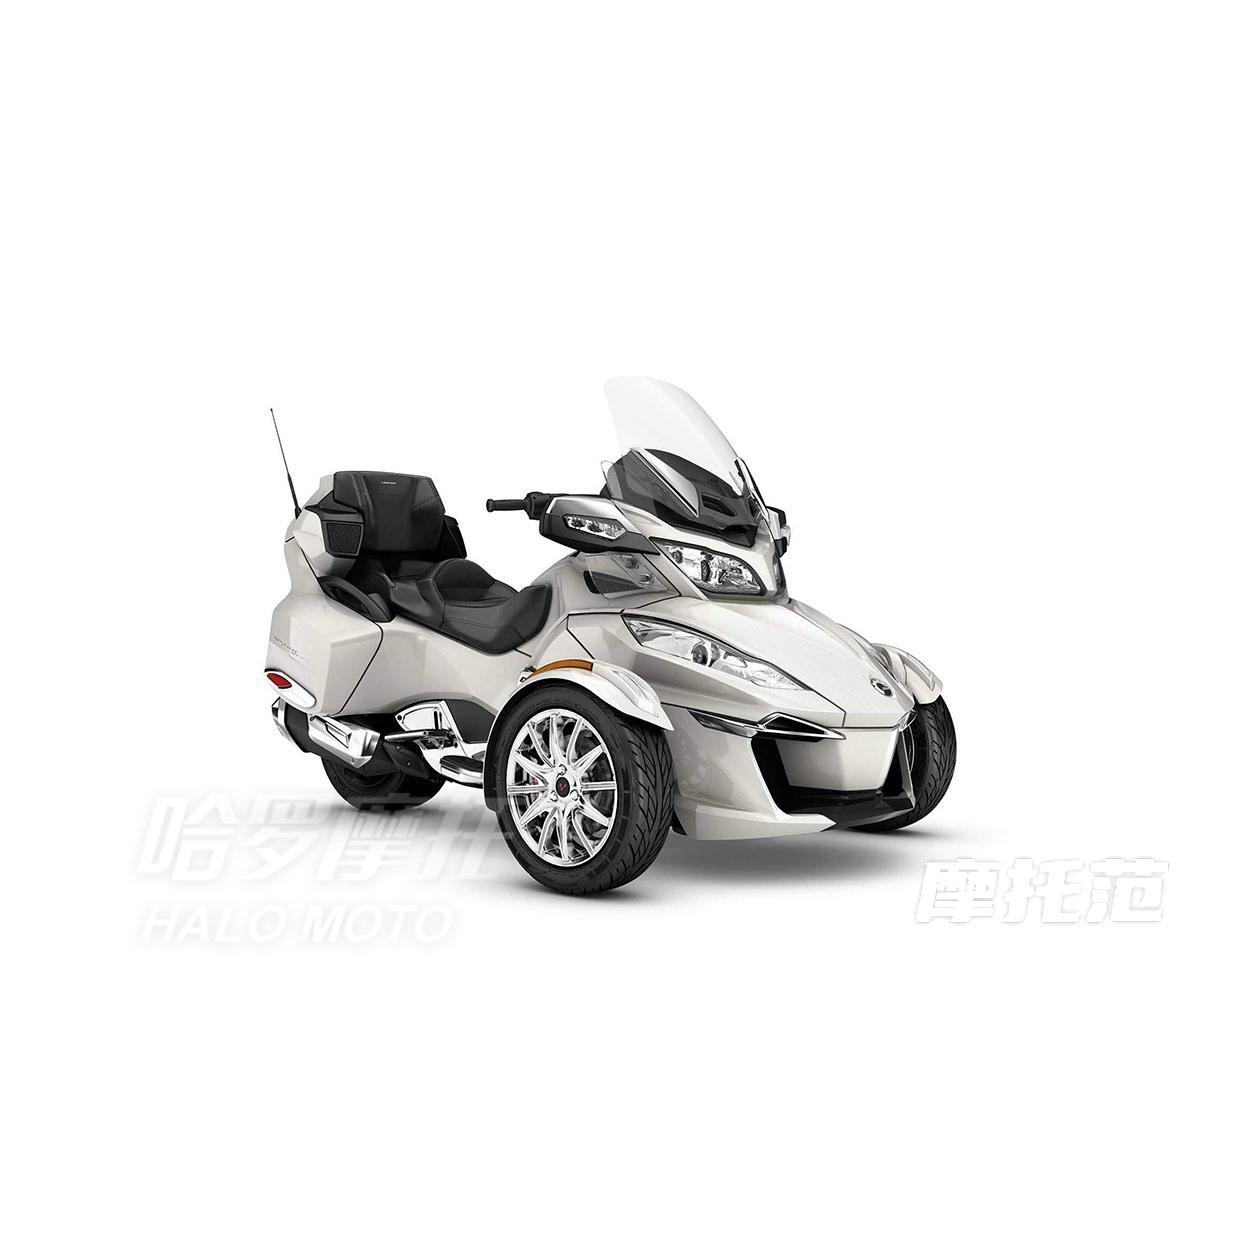 庞巴迪摩托车,Spyder RS-S Roadster报价及图片-摩托范-哈罗摩托车官网